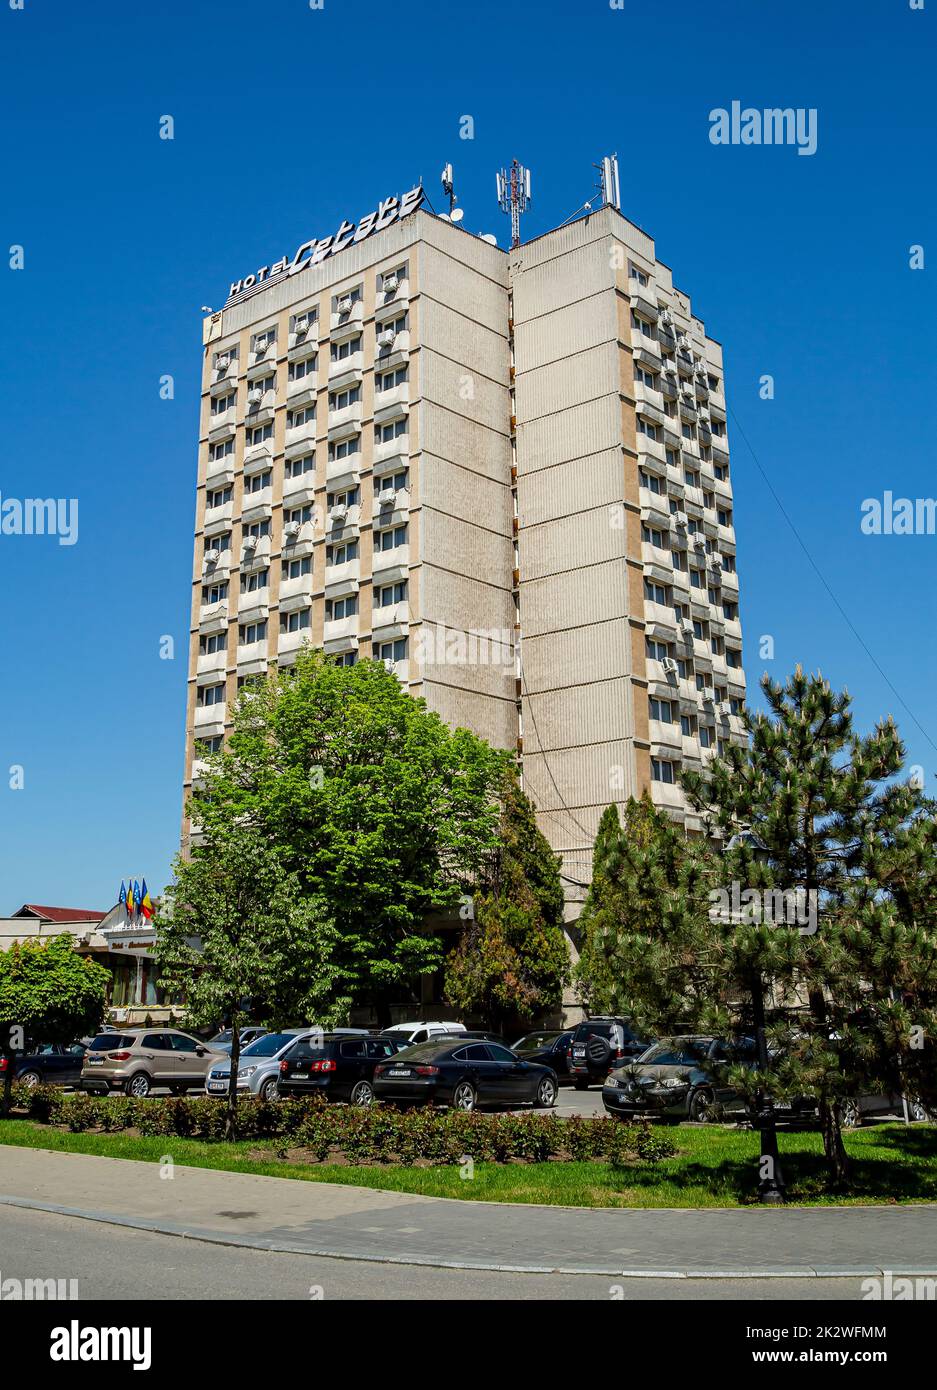 View of  Hotel Continental located in central zone in  Alba Iulia, Transylvania, Romania Stock Photo